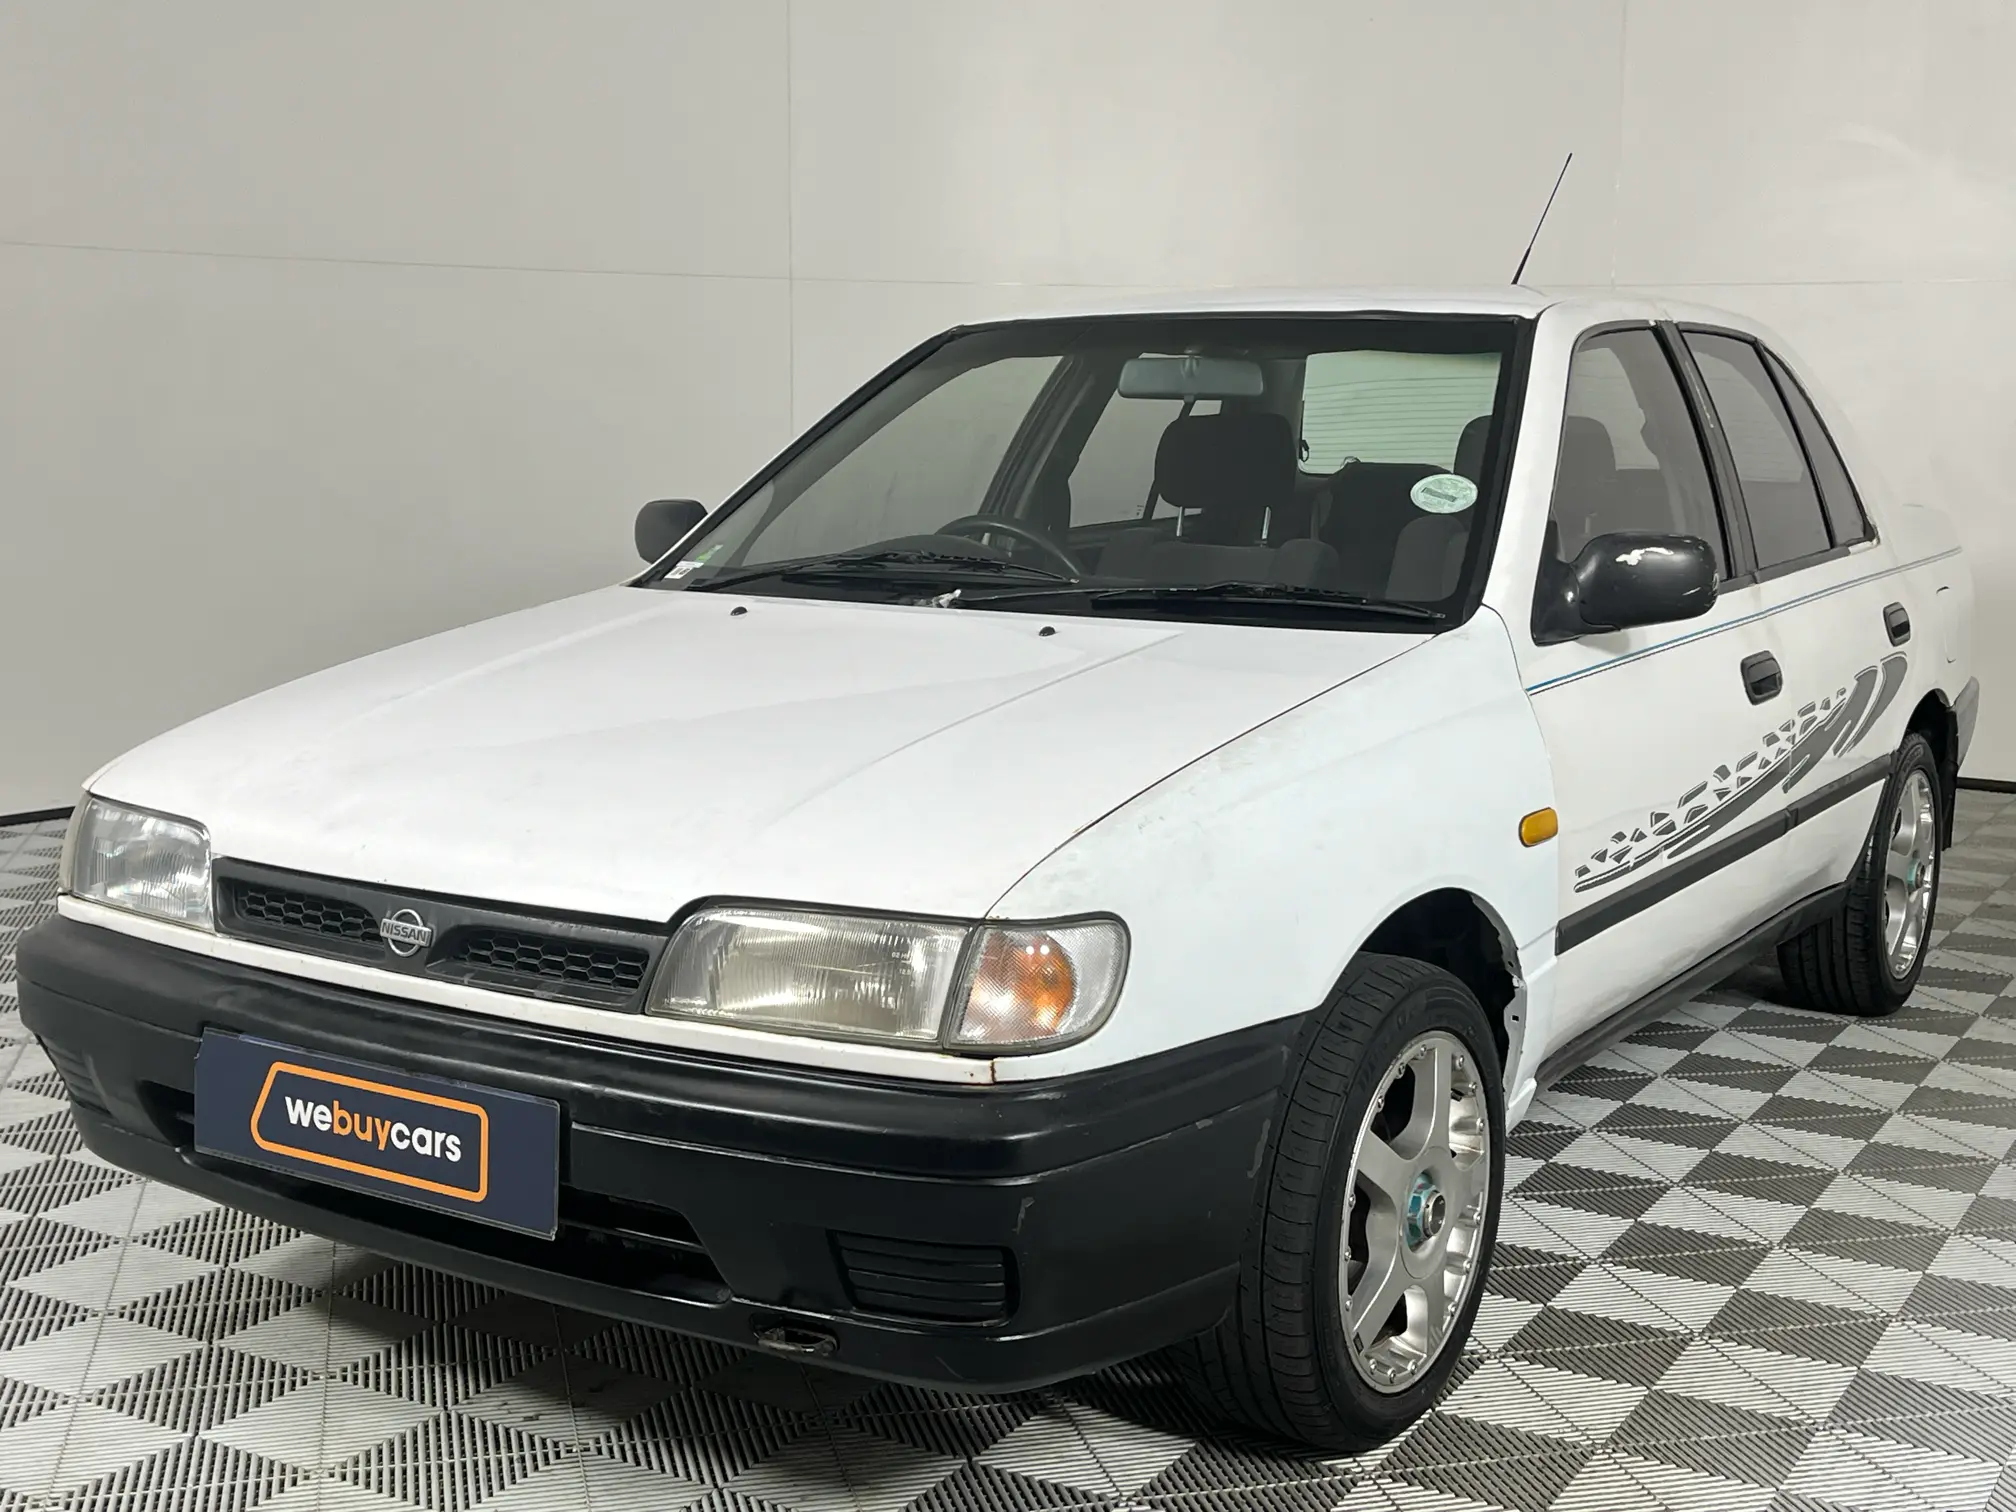 1997 Nissan Sentra 160 Auto A/C P/S